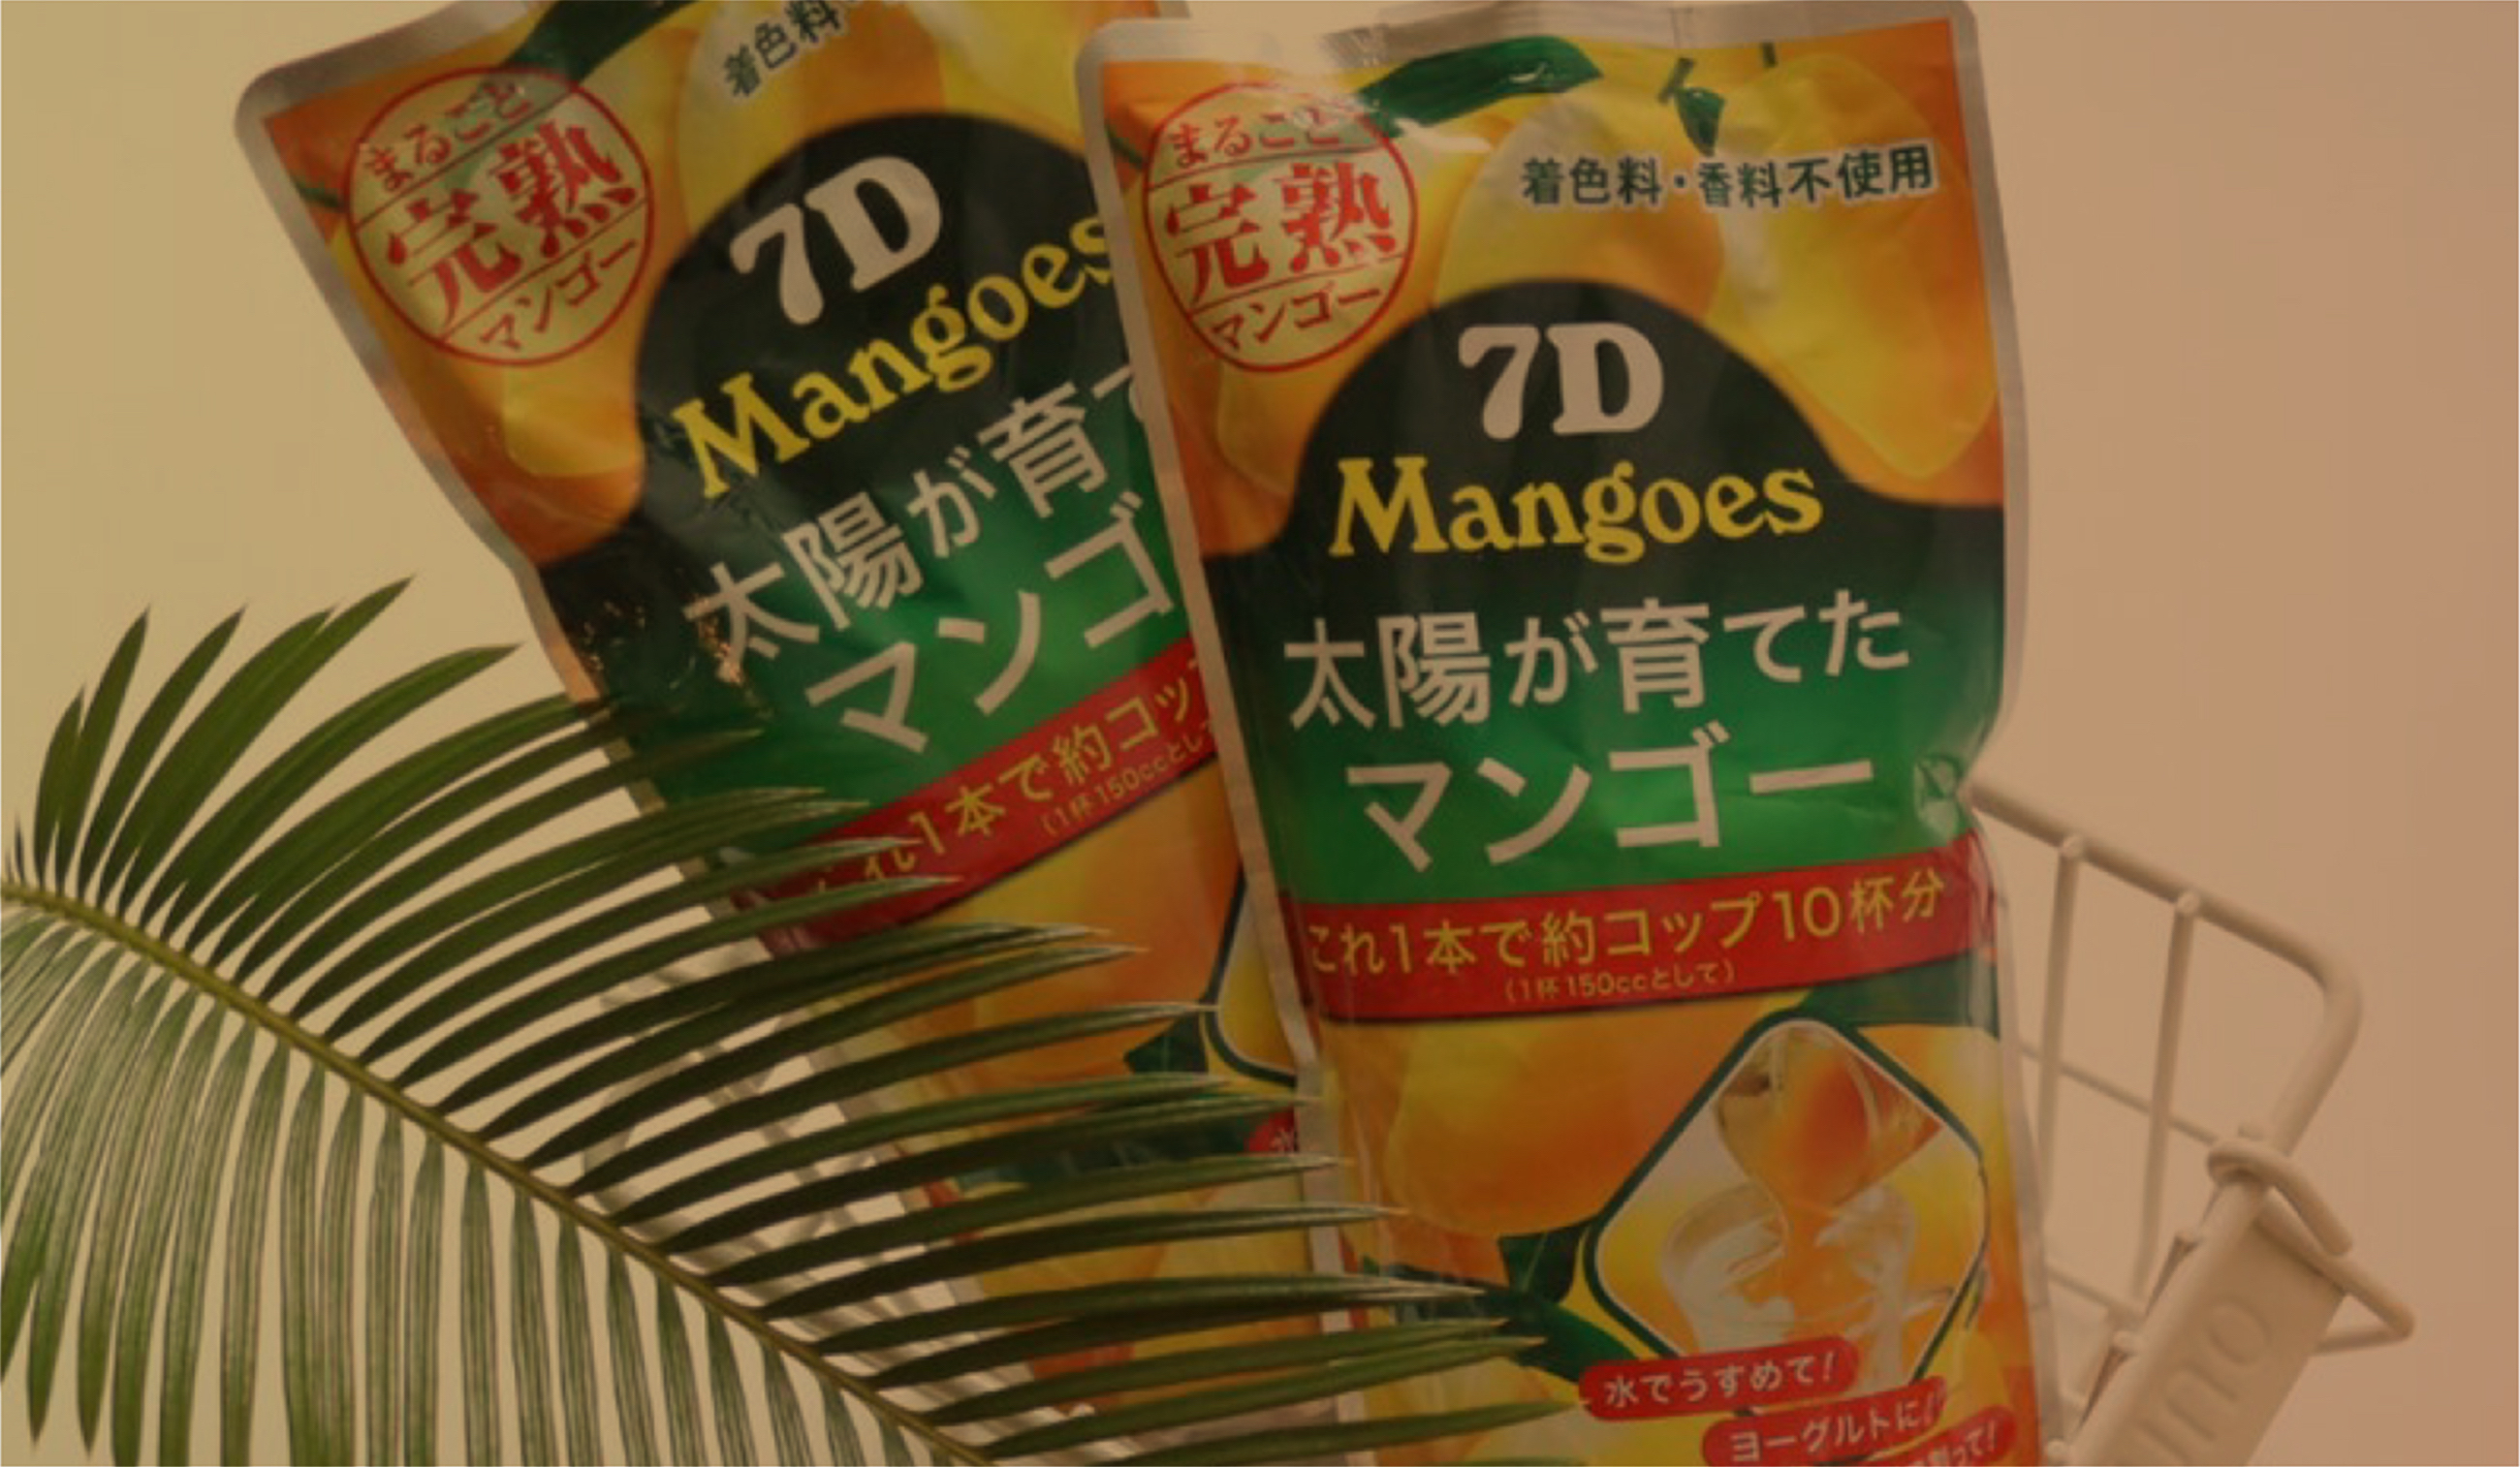 7Dmangoes